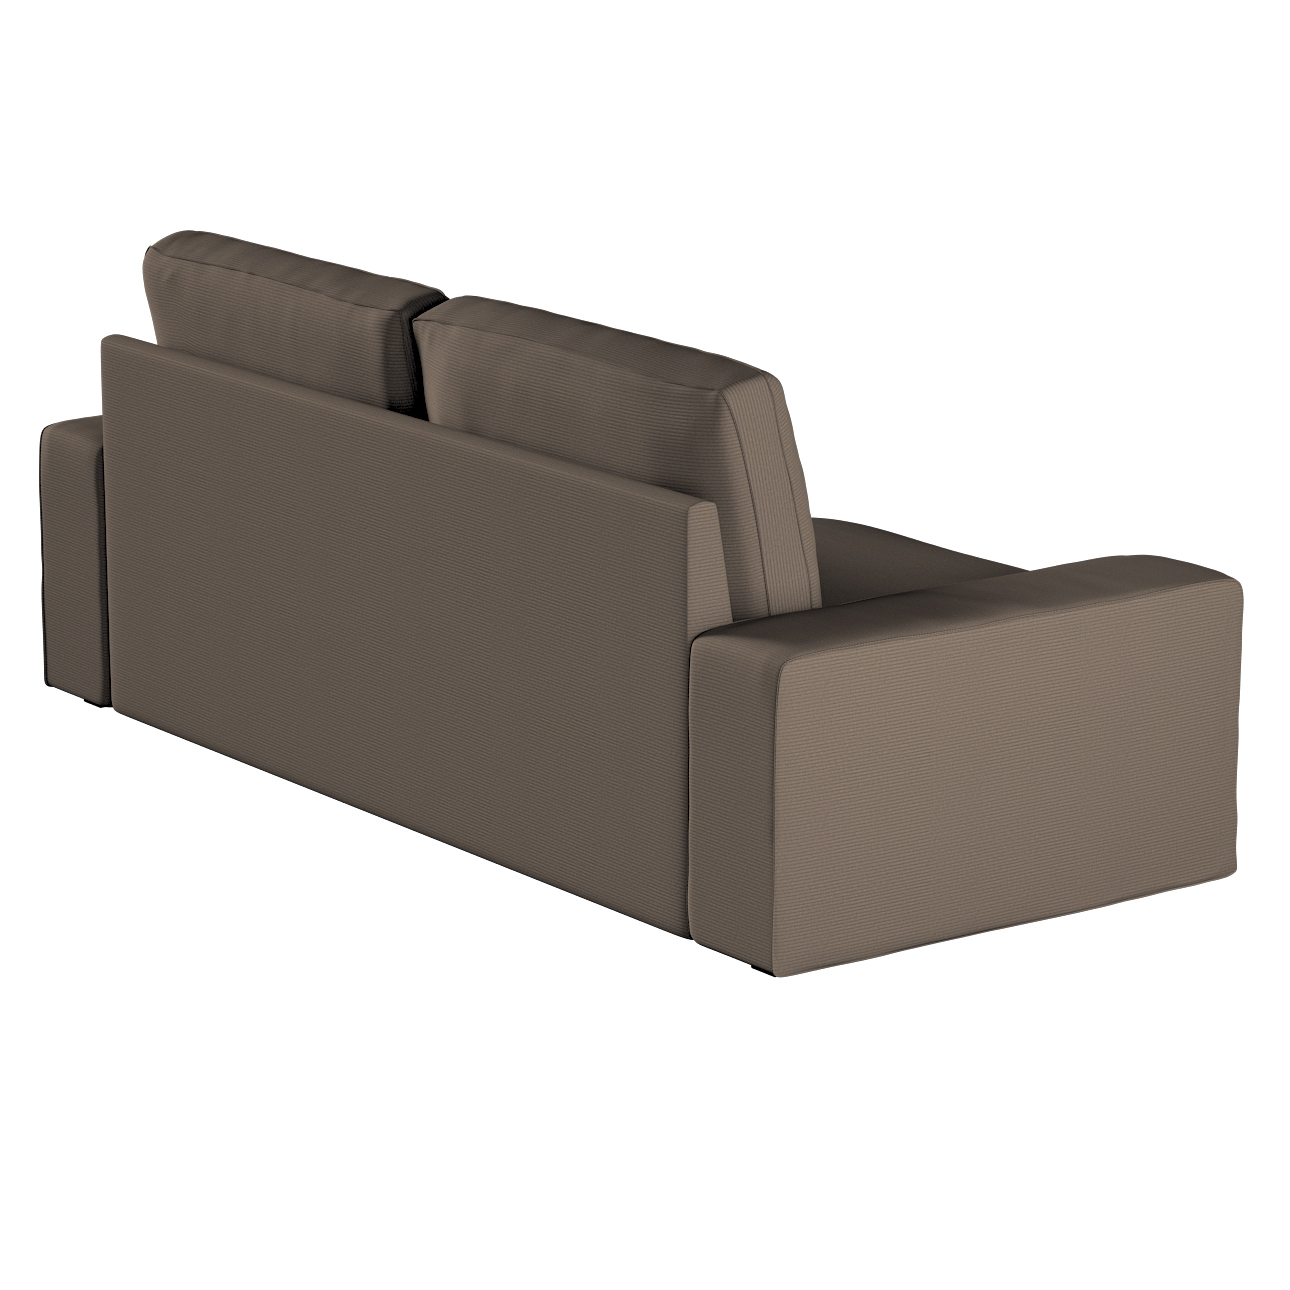 Bezug für Kivik 3-Sitzer Sofa, braun, Bezug für Sofa Kivik 3-Sitzer, Manche günstig online kaufen